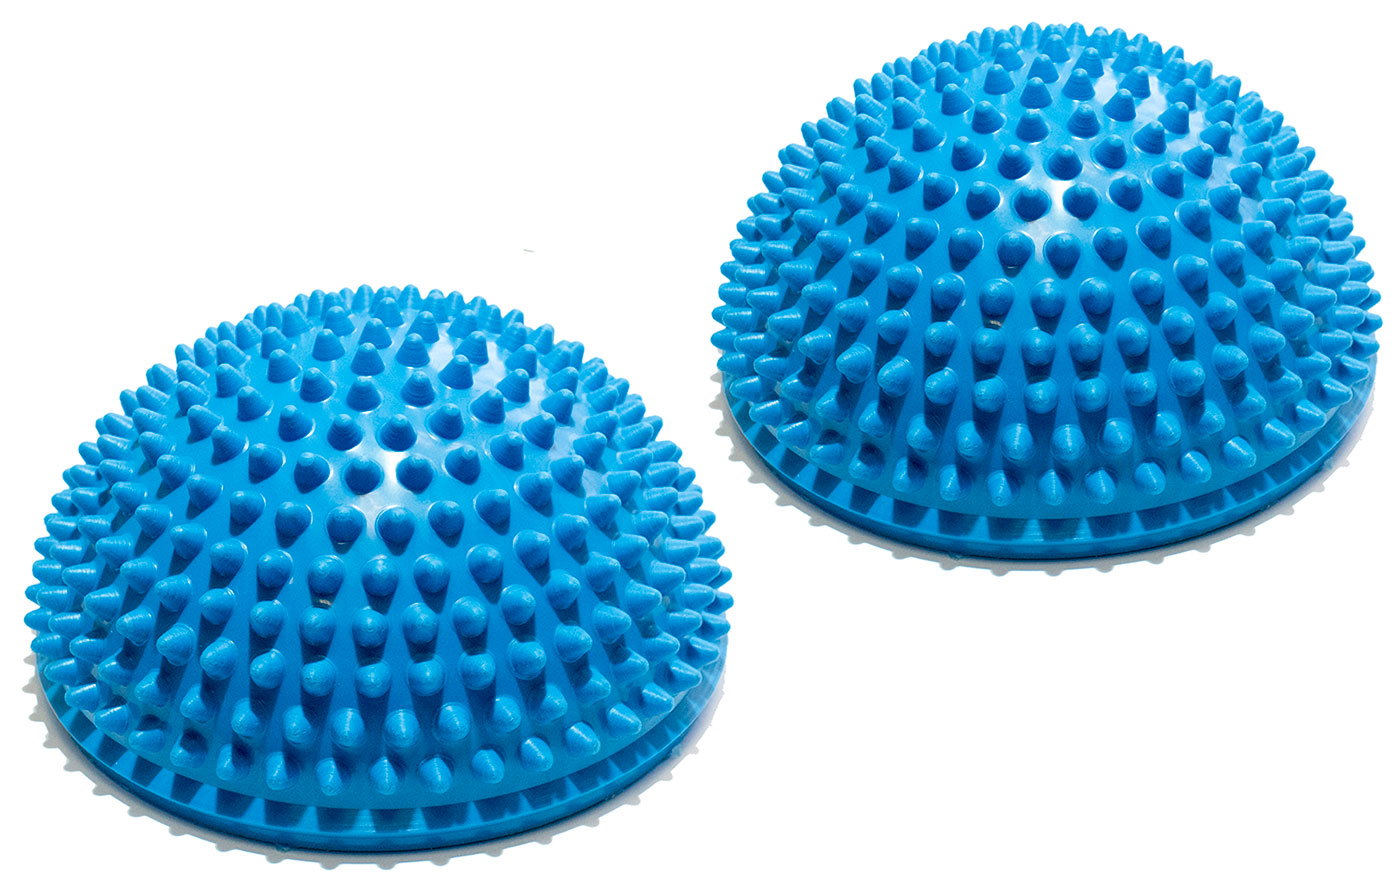 Полусфера массажно-балансировочная Original FitTools набор 2 шт синий балансировочная подушка original fittools набор массажно балансировочных полусфер 16 см